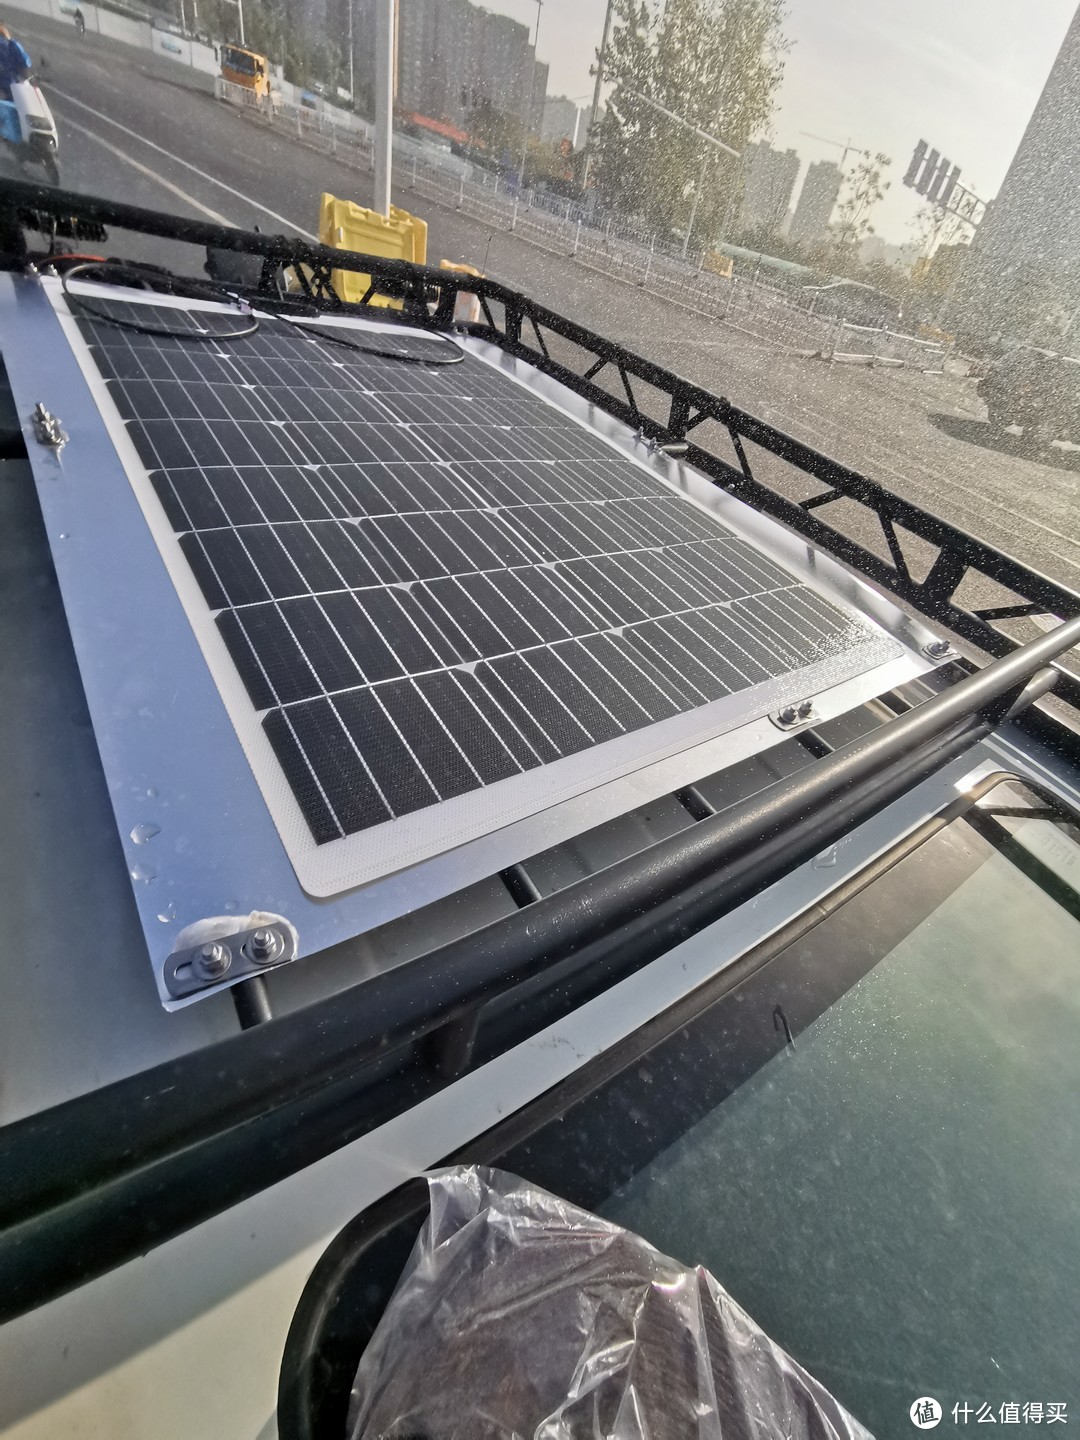 给汽车增加太阳能辅助供电